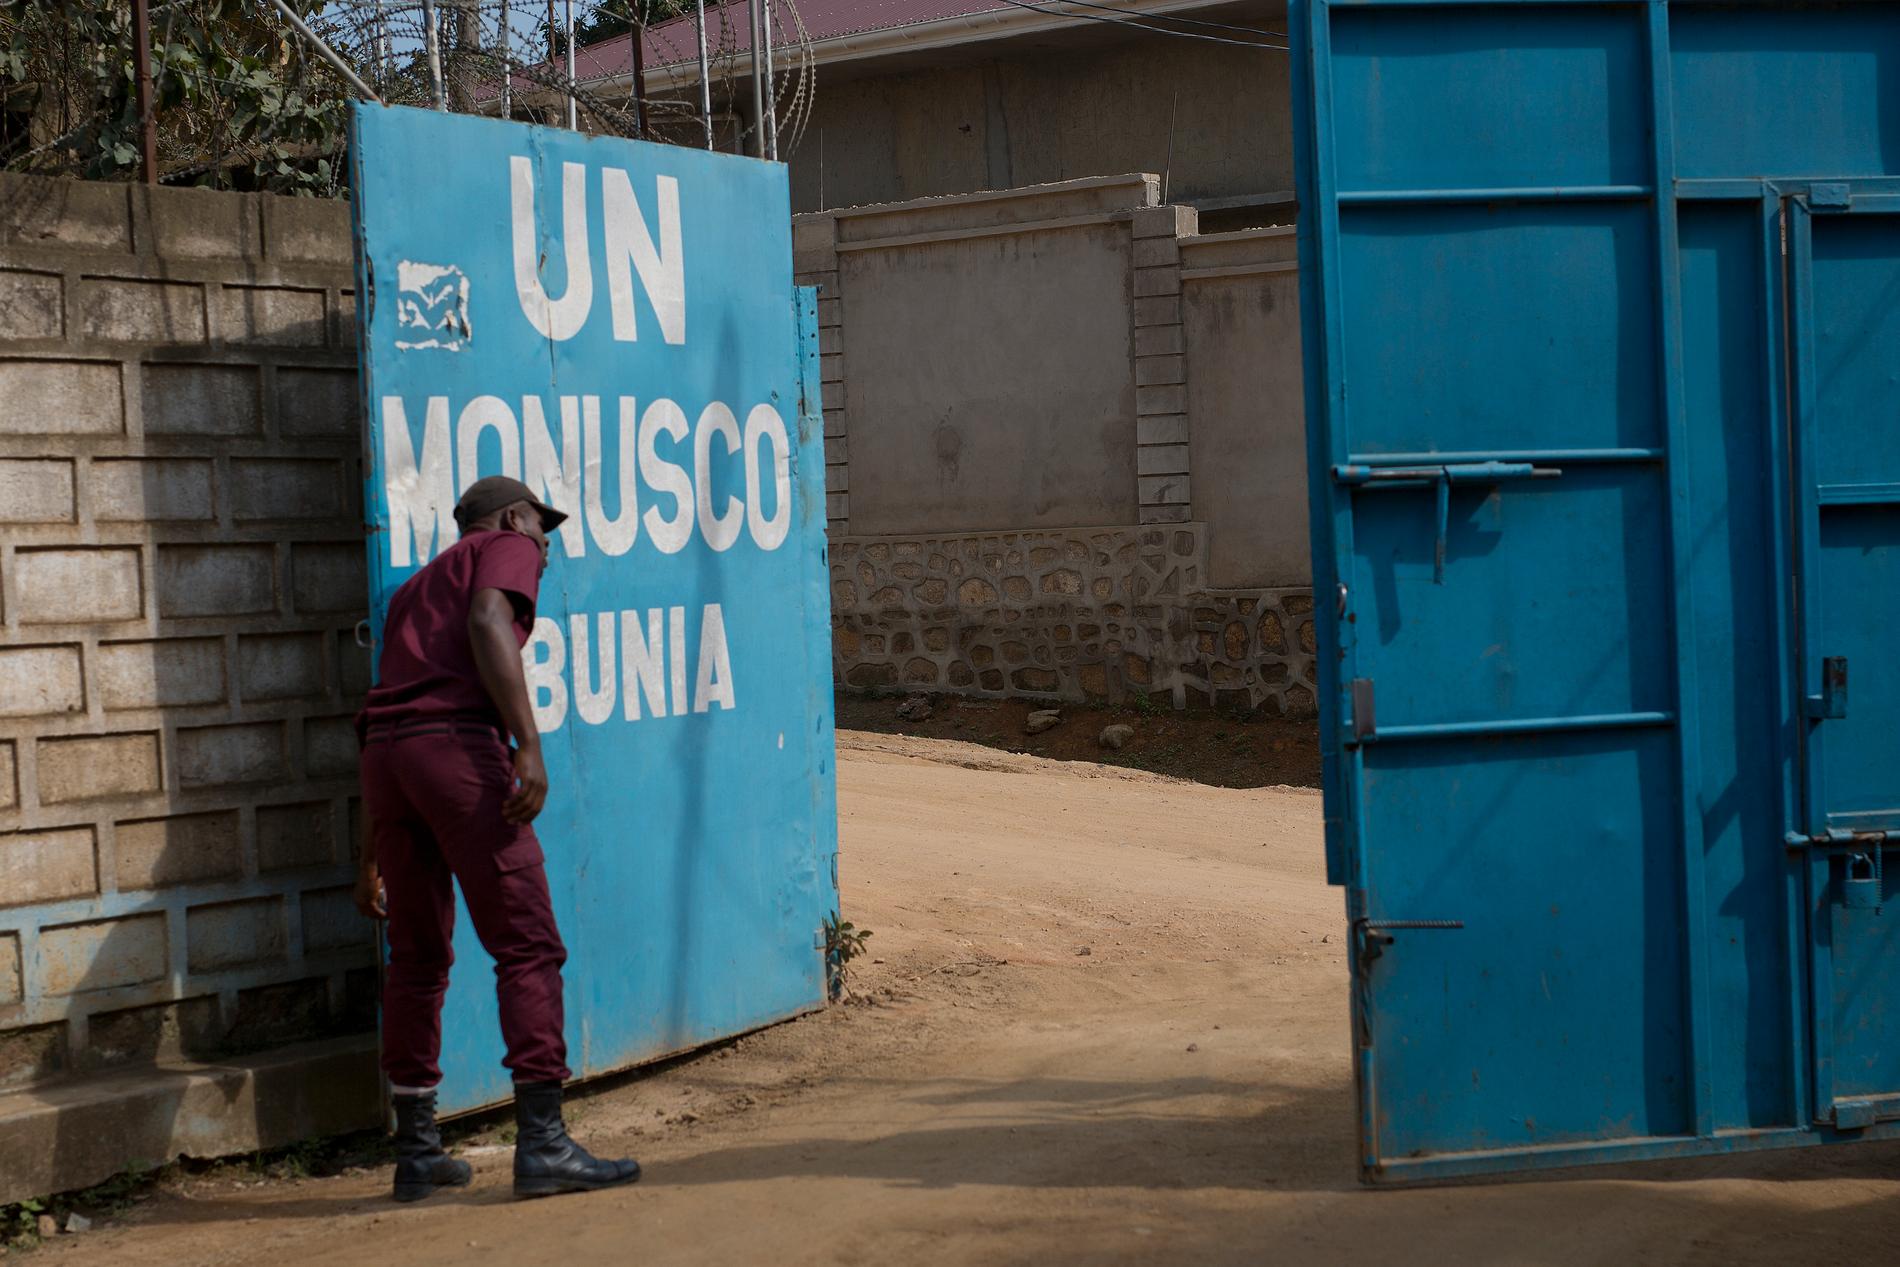 Åtta FN-soldater från Malawi har dödats i Kongo-Kinshasa. Arkivbild från FN-anläggning i landet, tagen 2016.